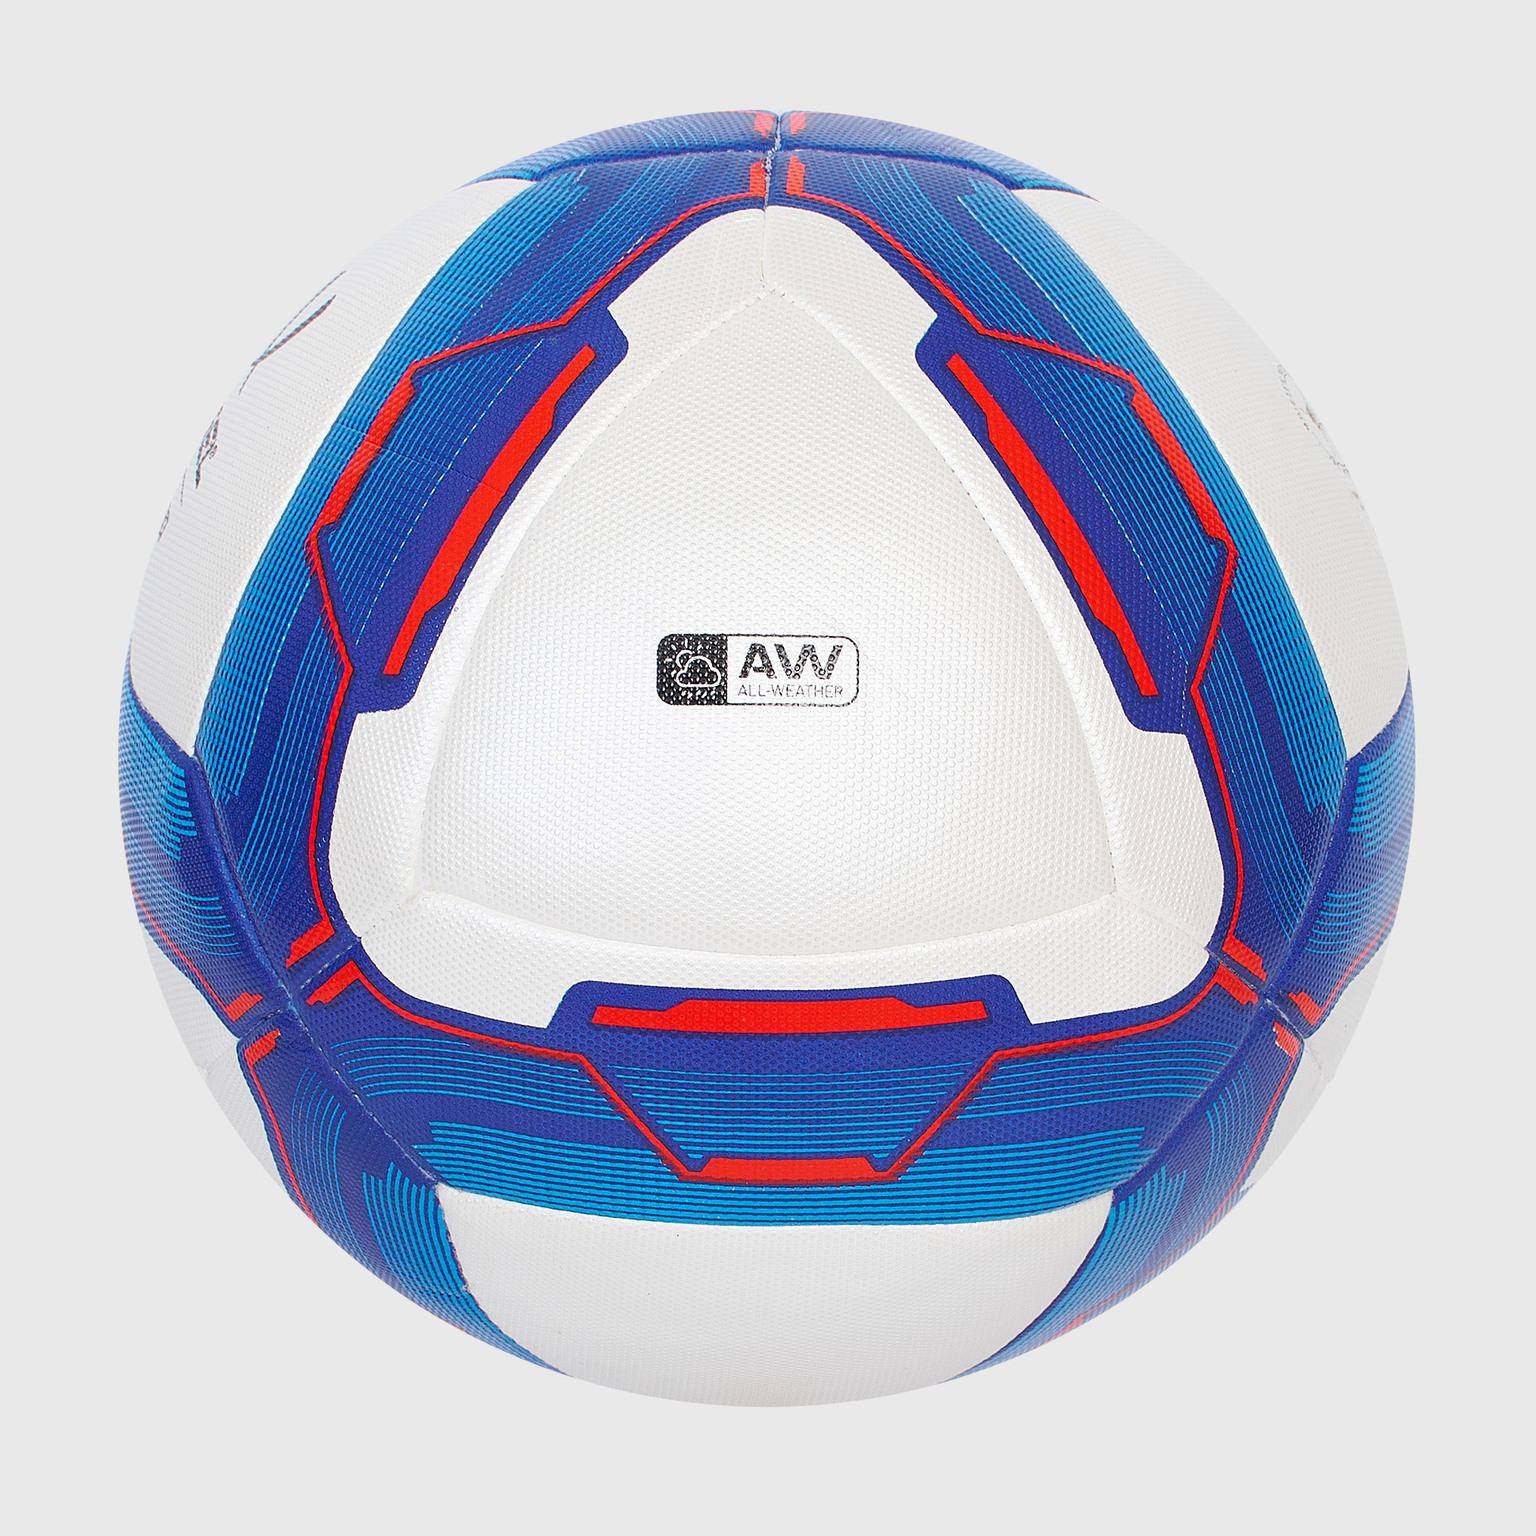 Футбольный мяч Jogel Primero УТ-00017605